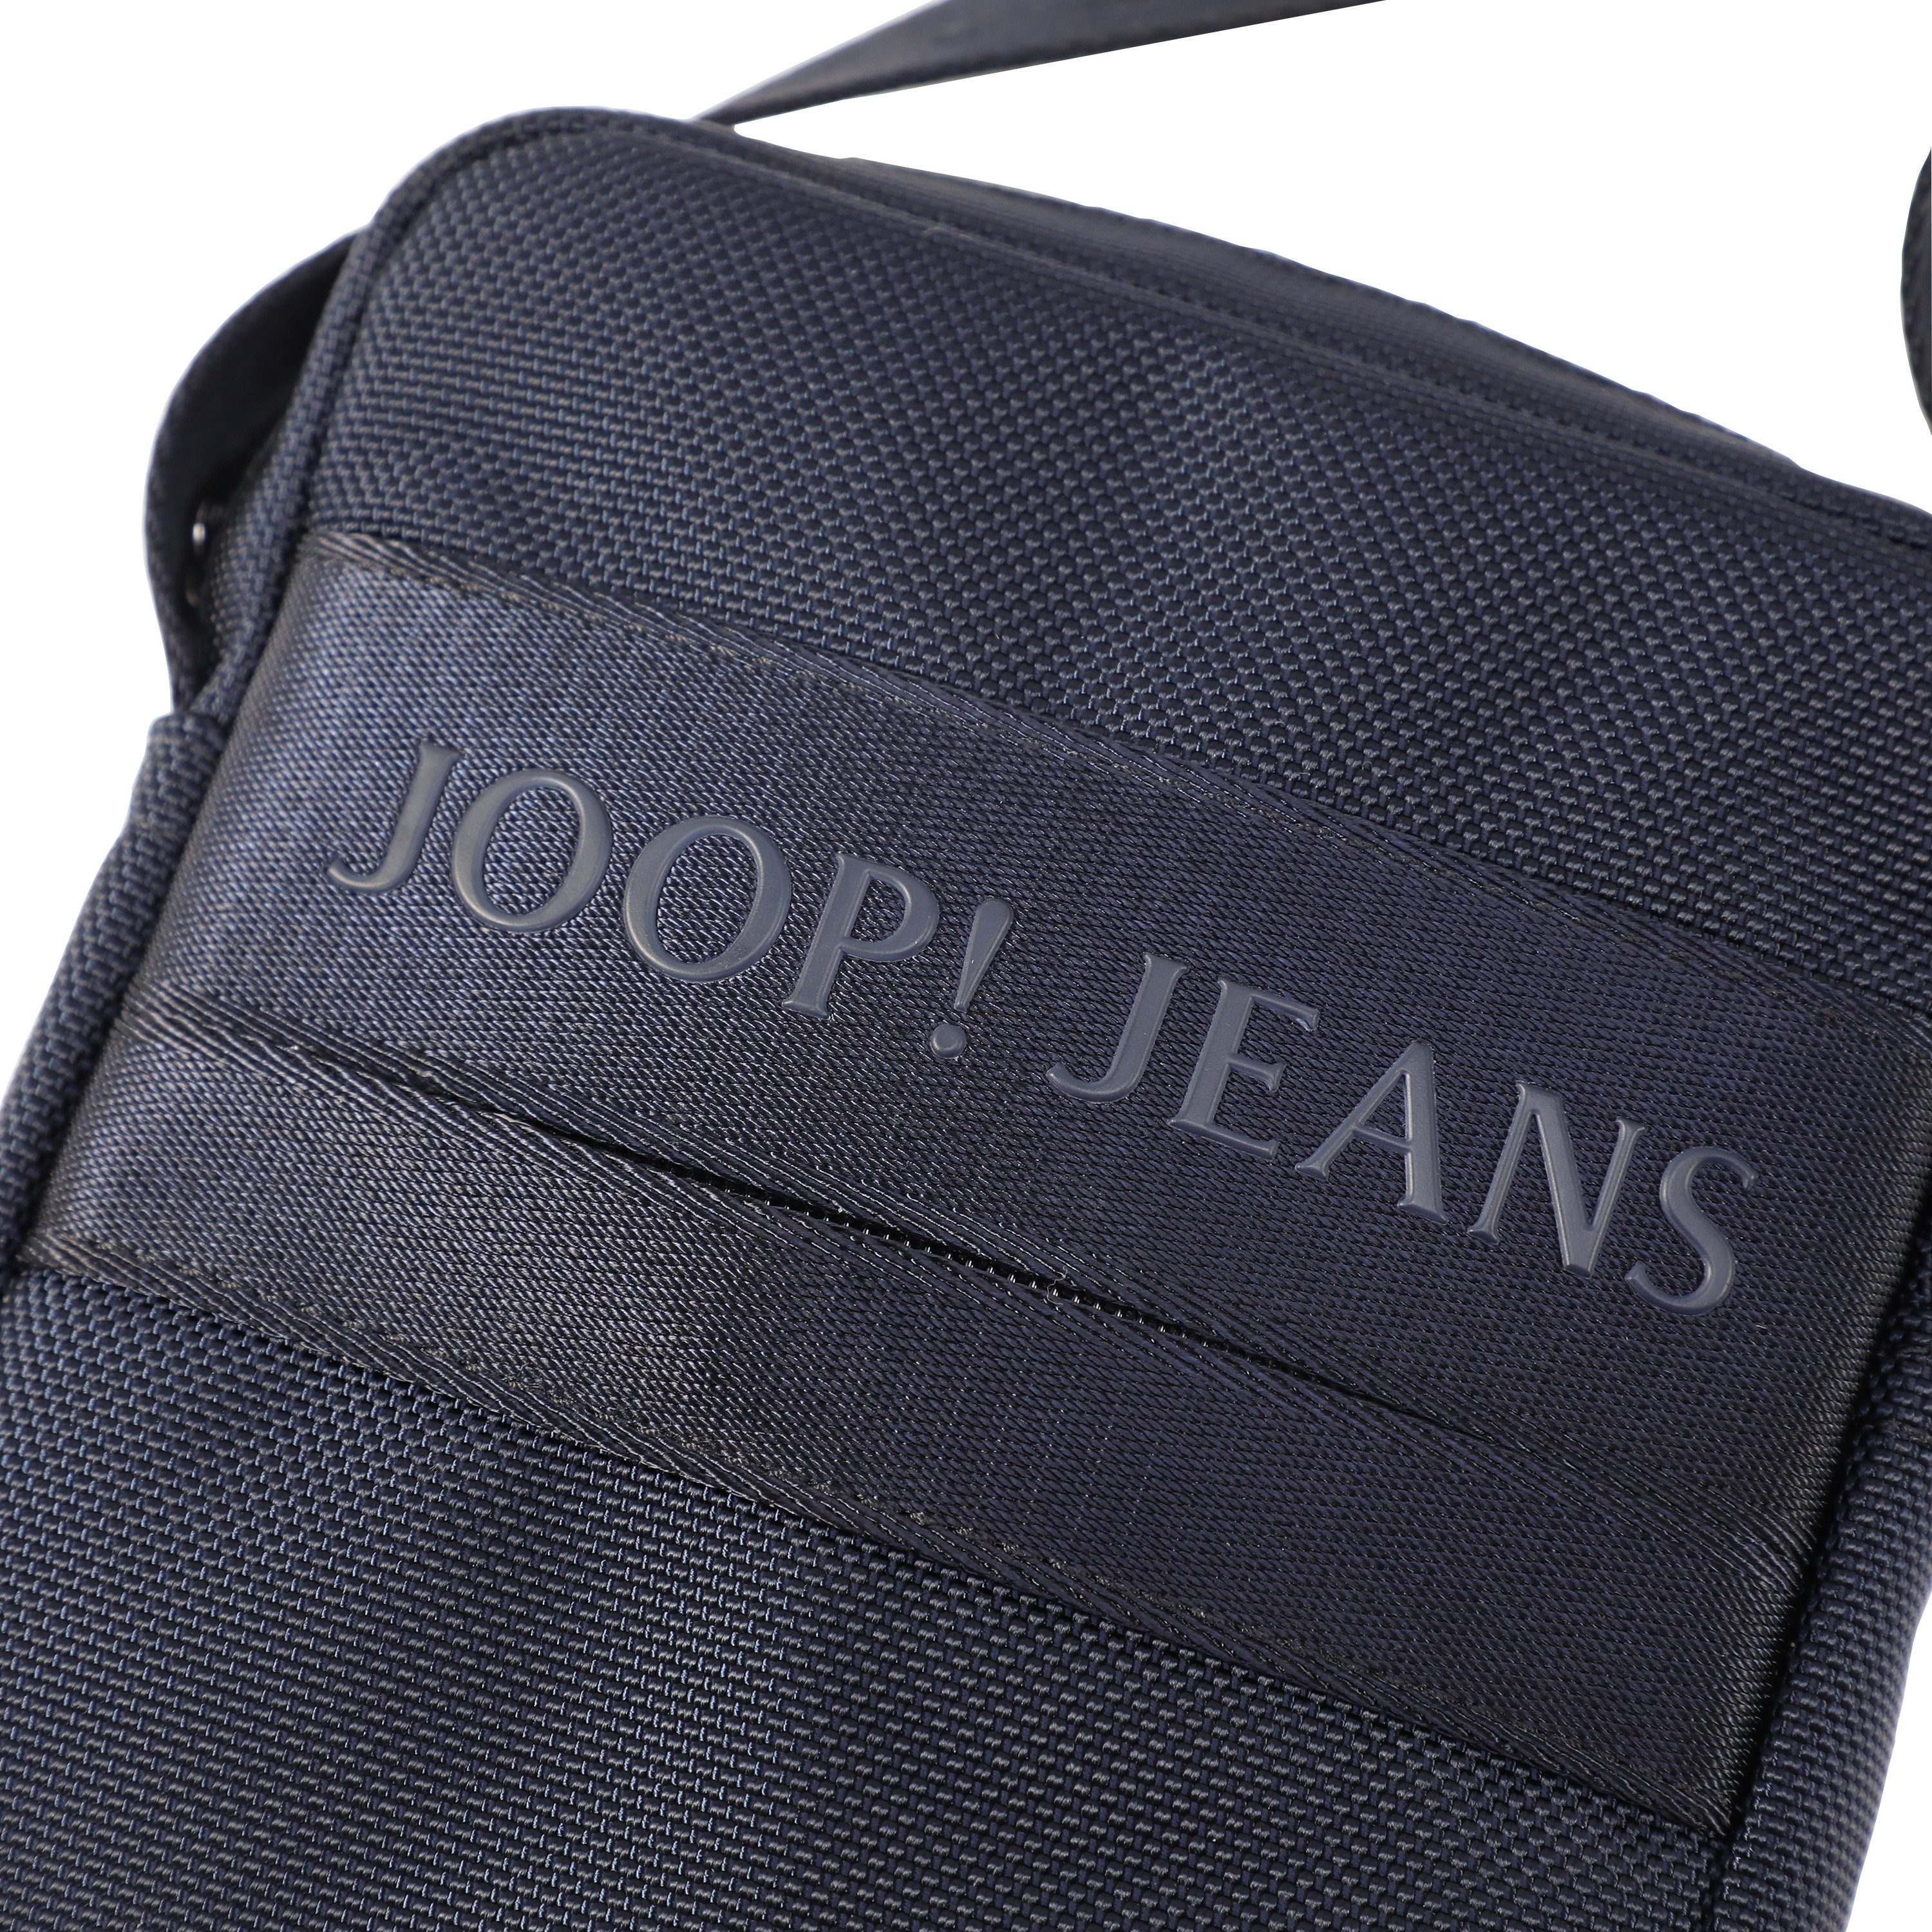 modica shoulderbag Design praktischen xsvz, im rafael dunkelblau Jeans Joop Umhängetasche